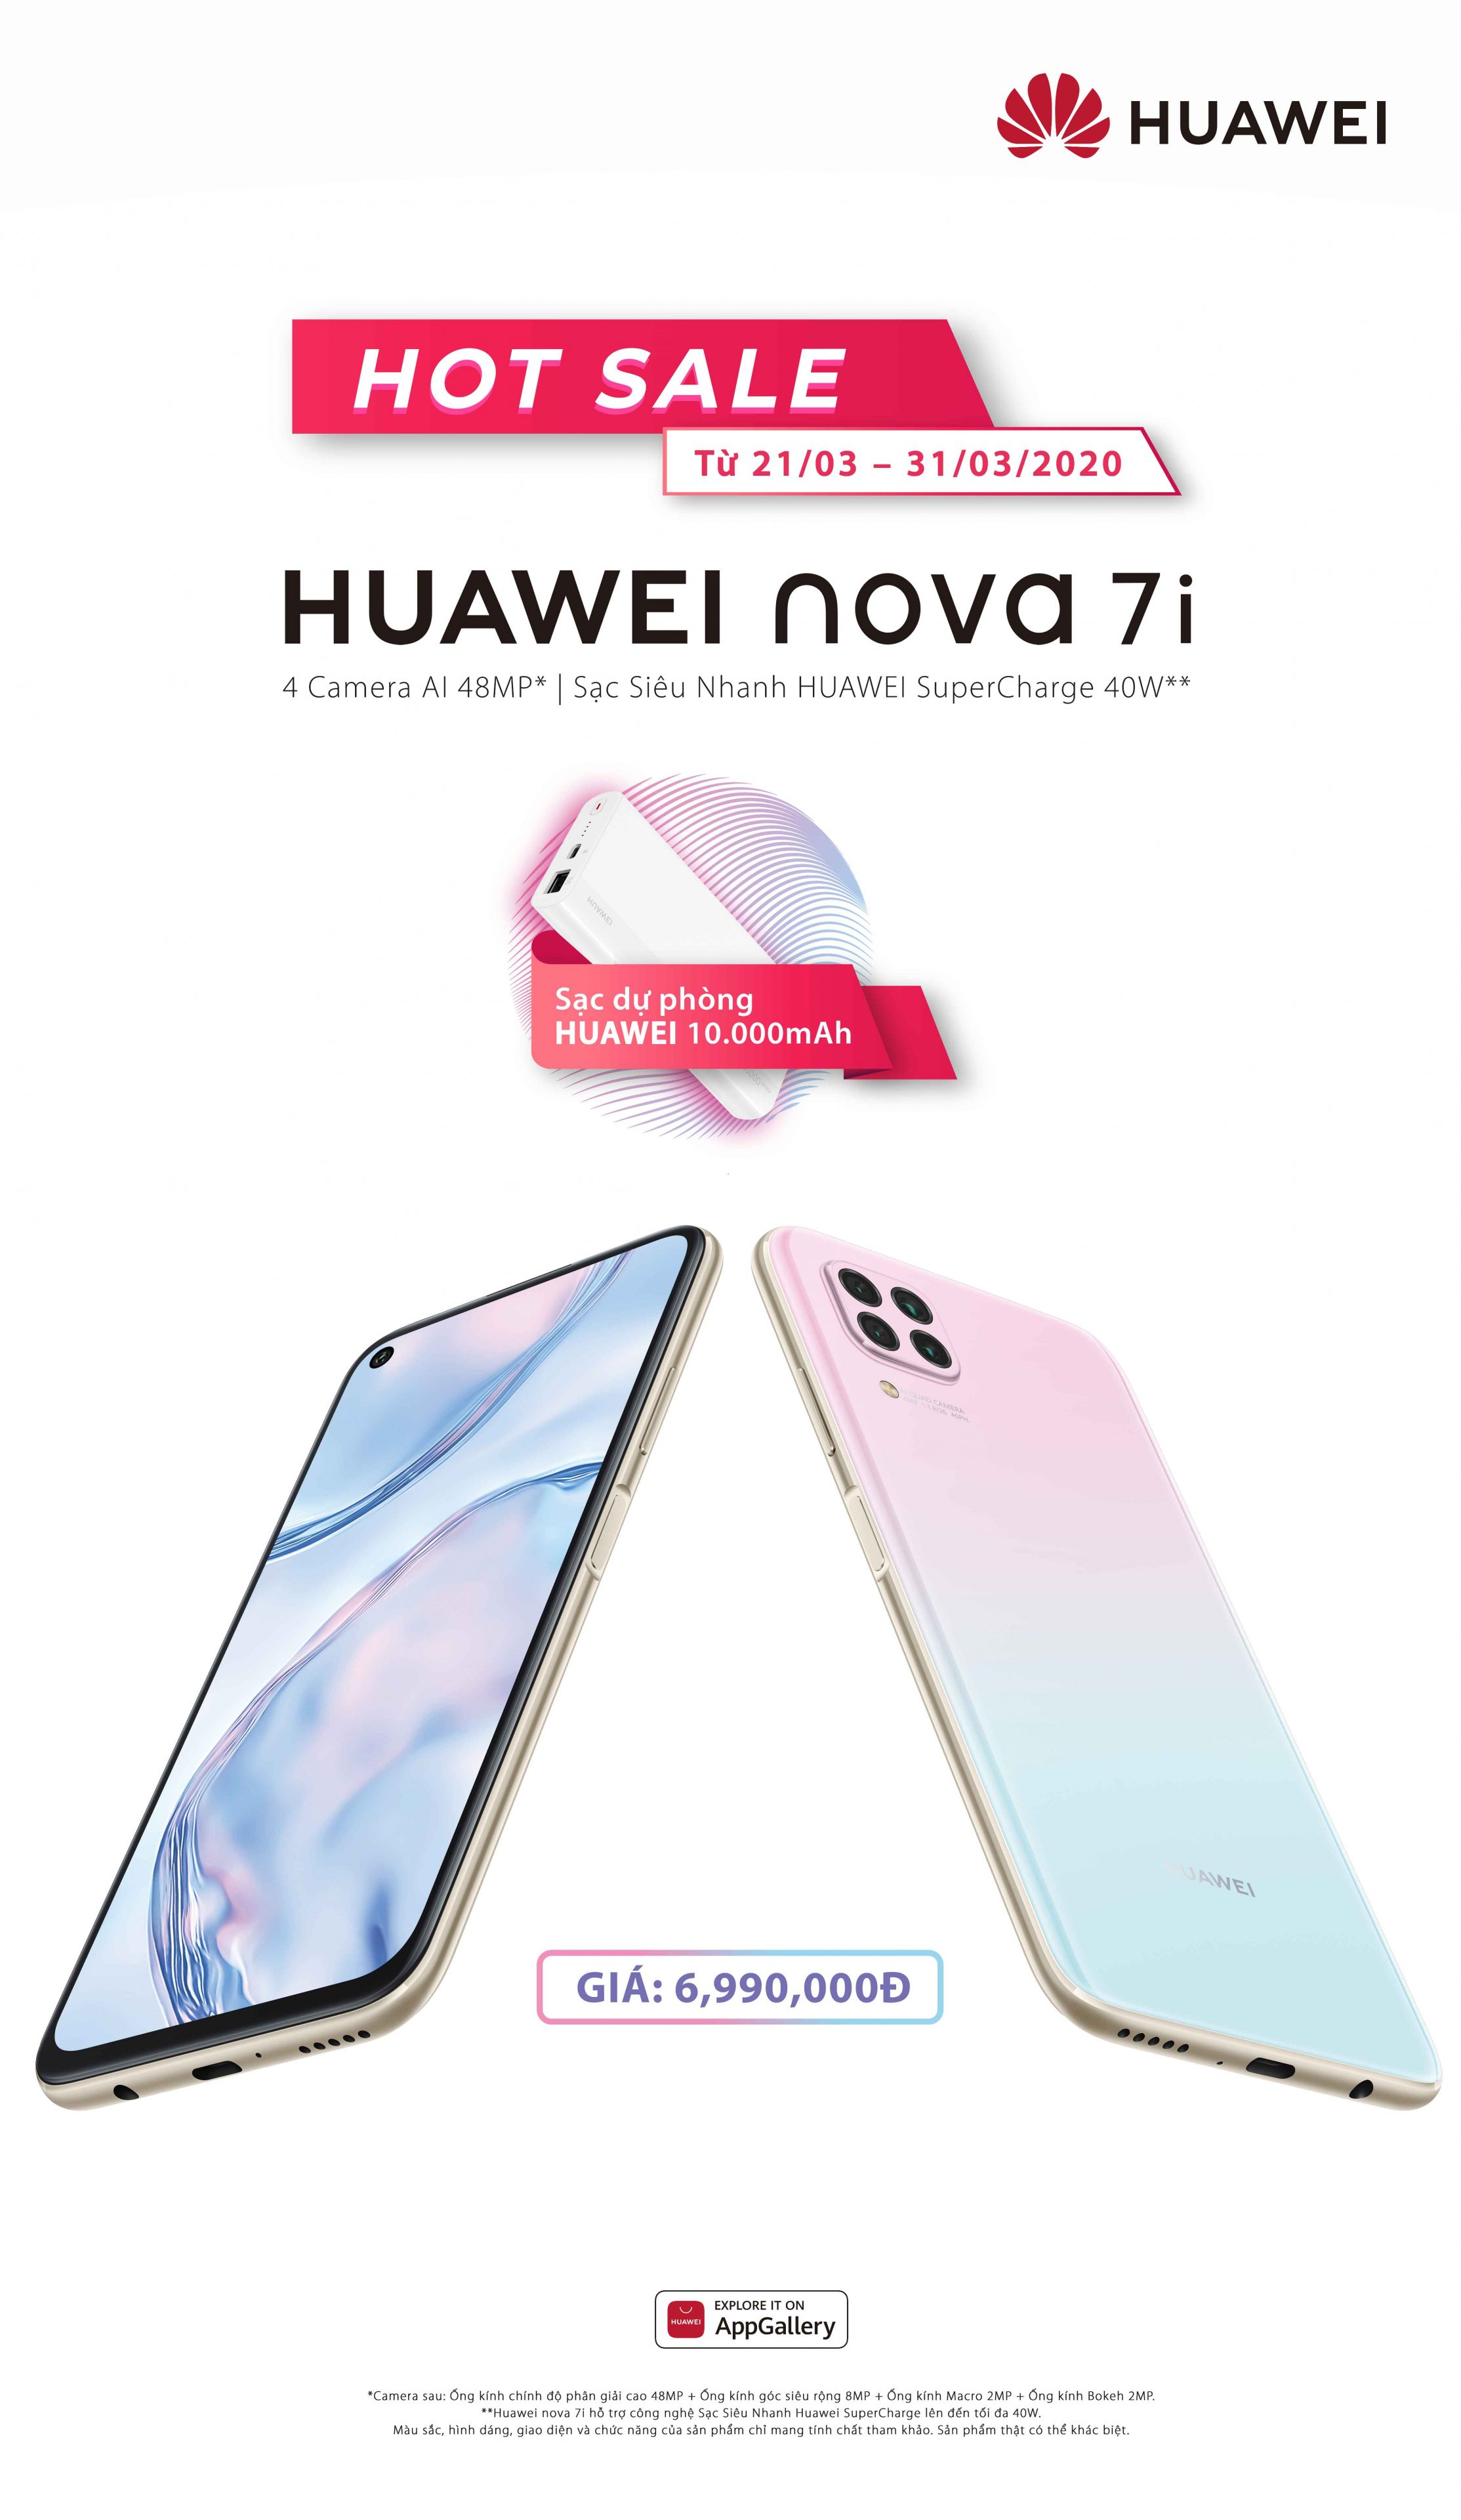 HUAWEI nova 7i chính thức có mặt tại Việt Nam, giá 6,990,000 VND